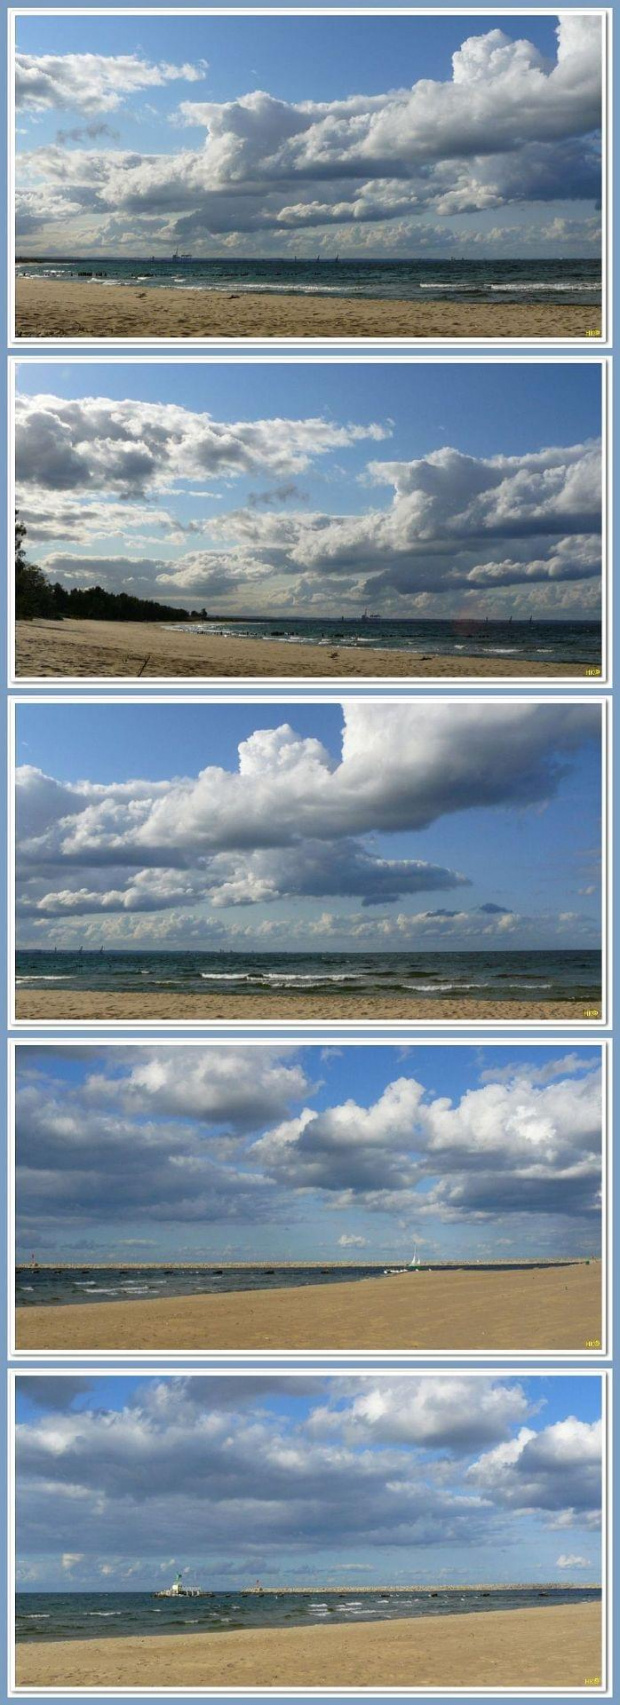 Górki Zachodnie-chmury nad naszym morzem #collage #InaczejNadMorzem #chmury #widok #panoramicznie #plaża